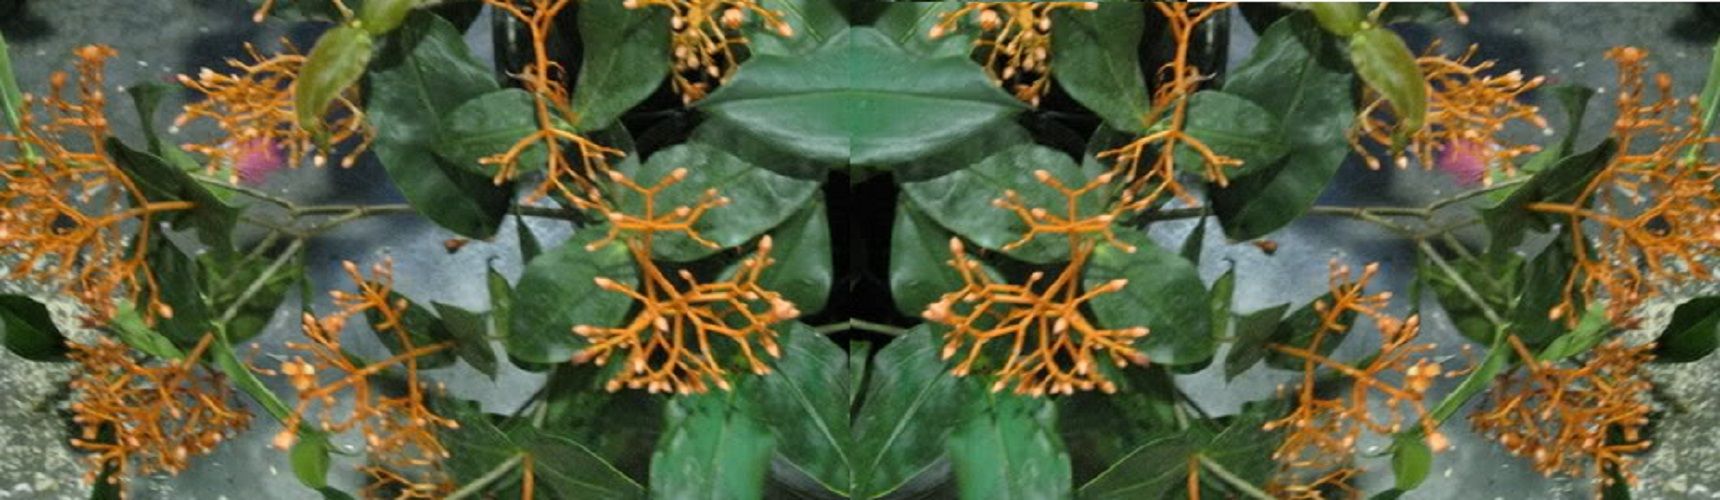 Medinilla alata  ~Lalique~  Chadielier Plant